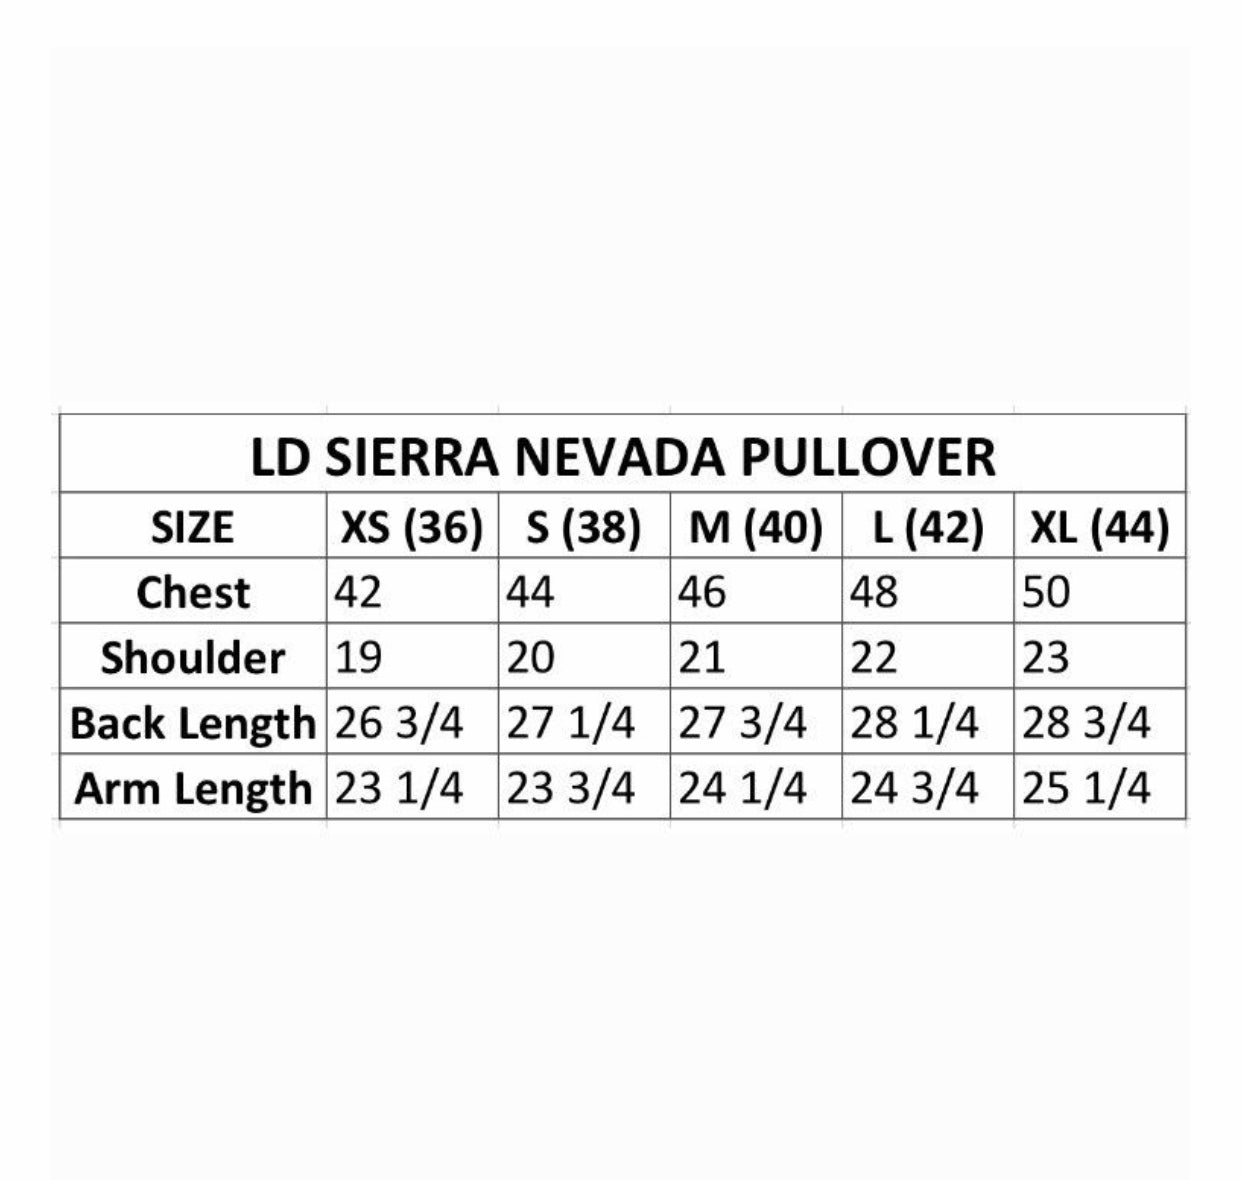 LD Sierra Nevada Miner's Pullover